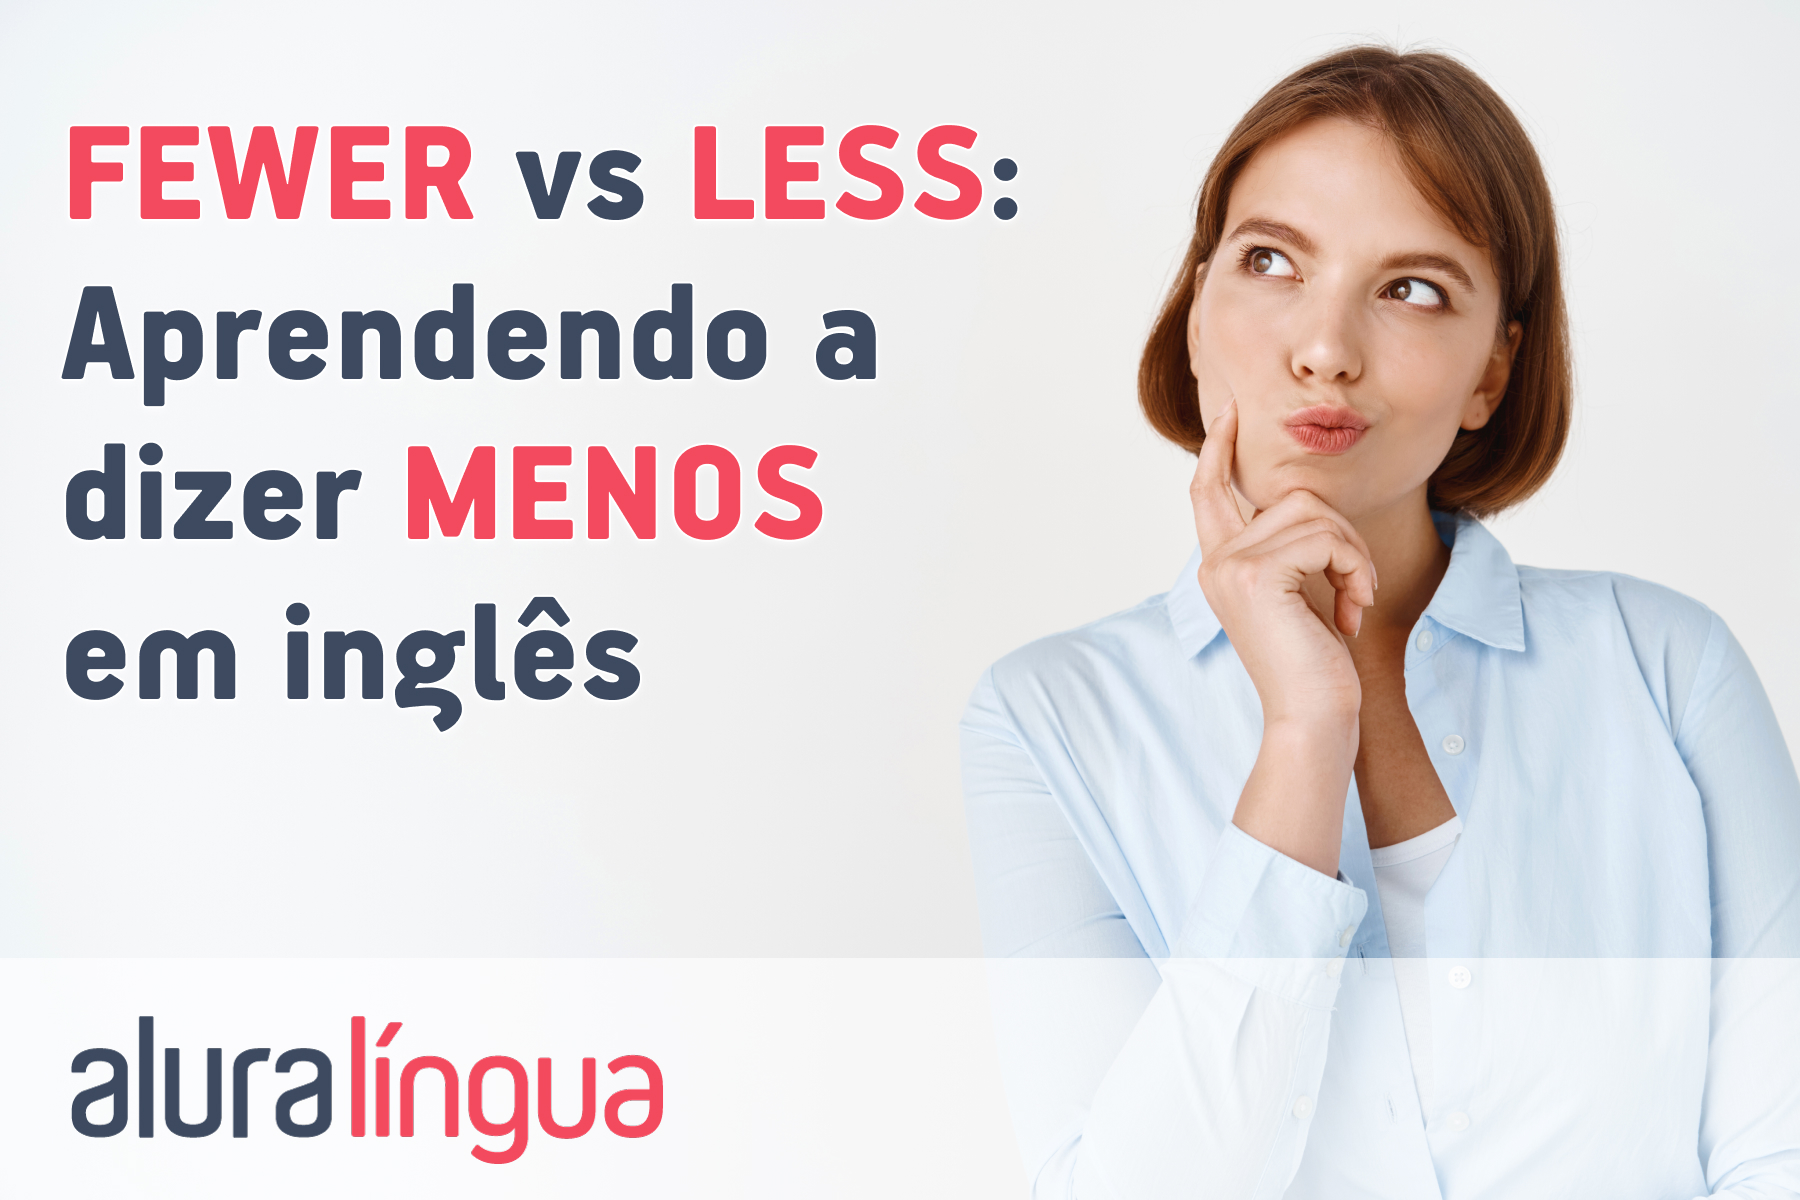 FEWER vs LESS - Aprendendo a dizer MENOS em inglês #inset